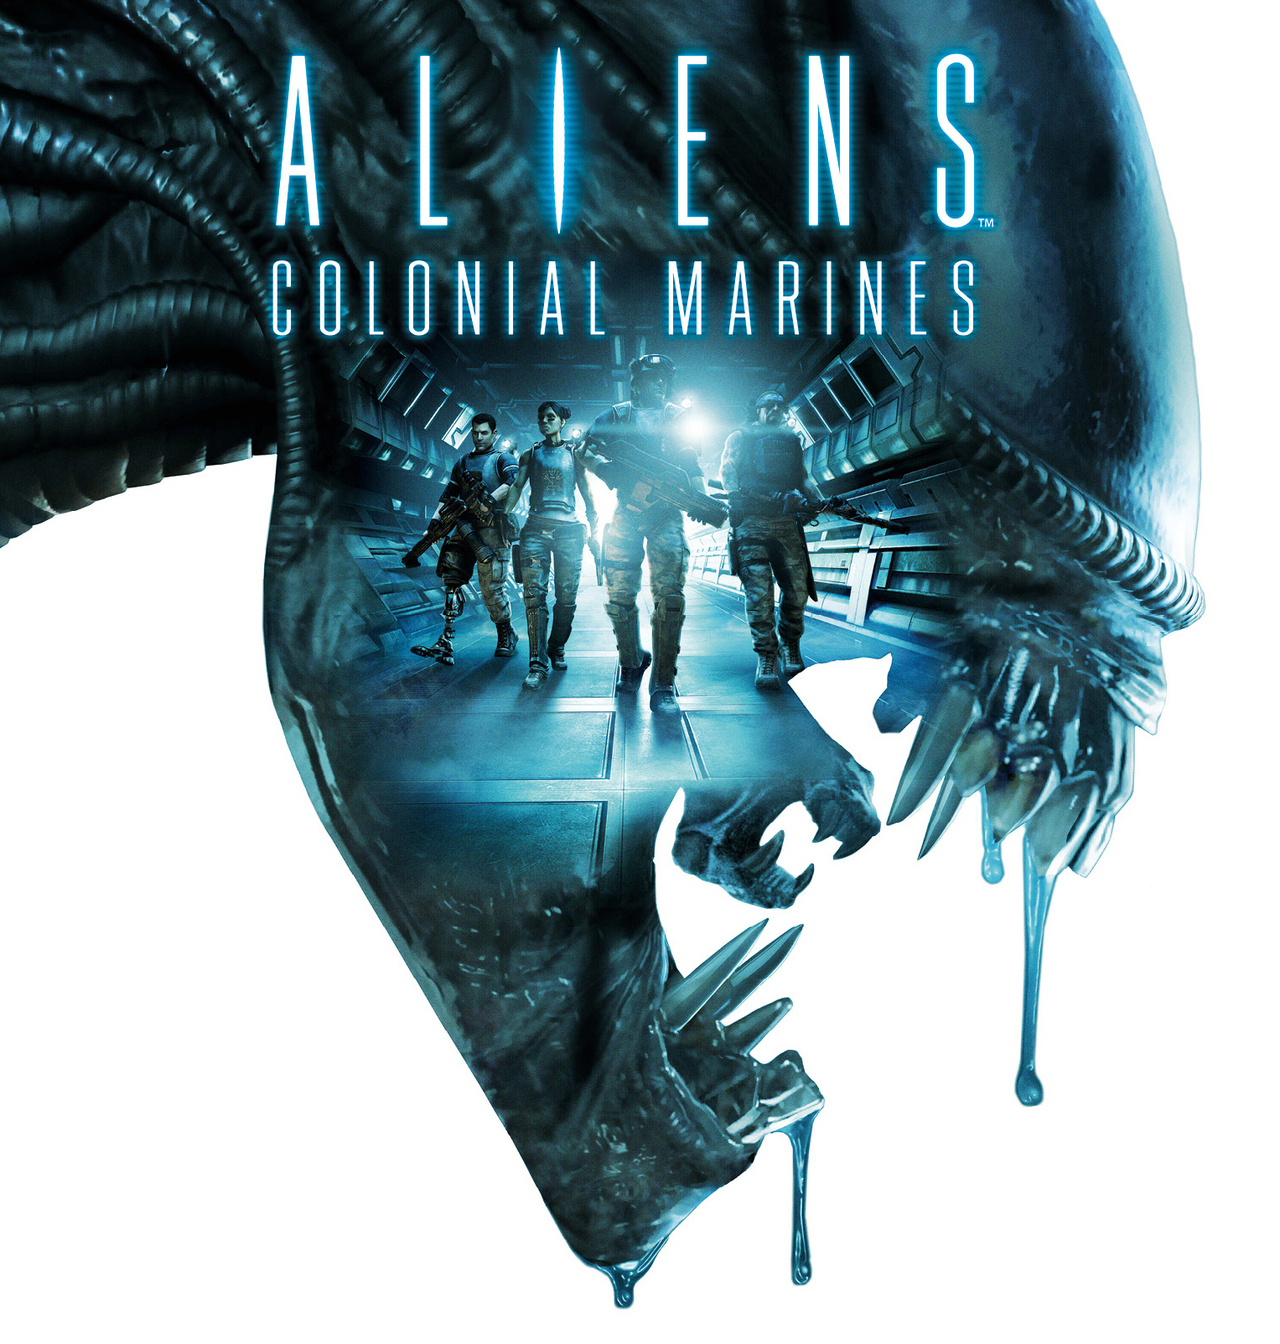 jaquette-aliens-colonial-marines-wii-u-wiiu-cover-avant-g-1338364326.jpg